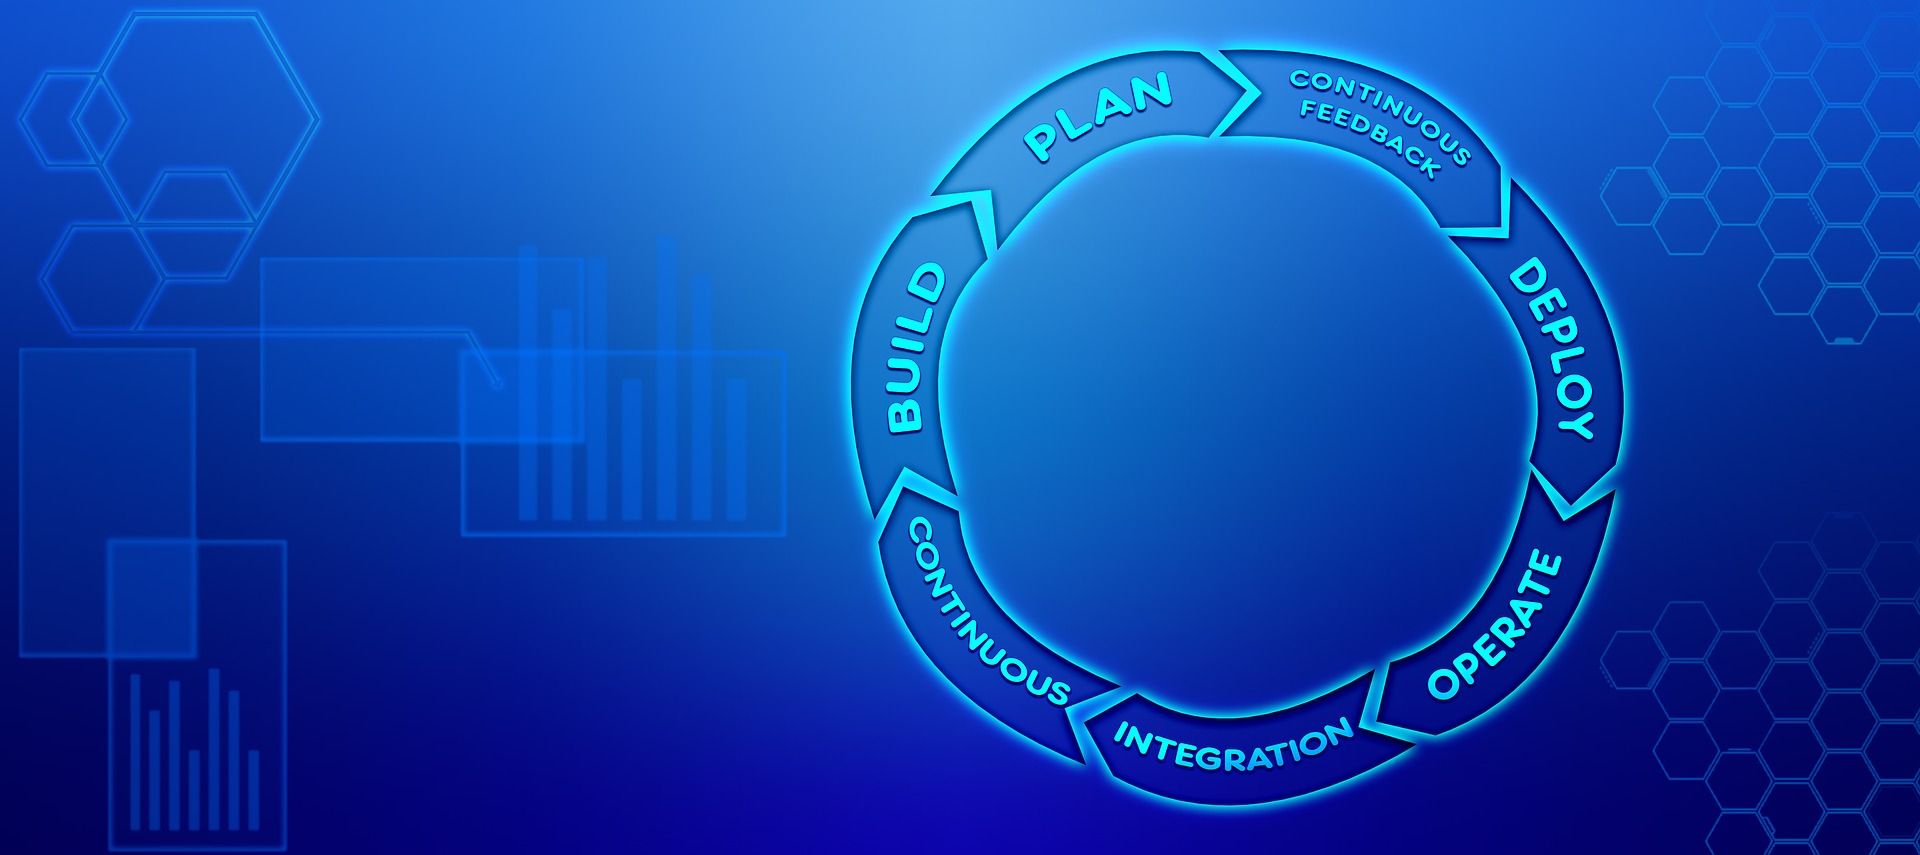 Um diagrama circular mostra um processo contínuo envolvendo etapas de construção, planejamento e integração.